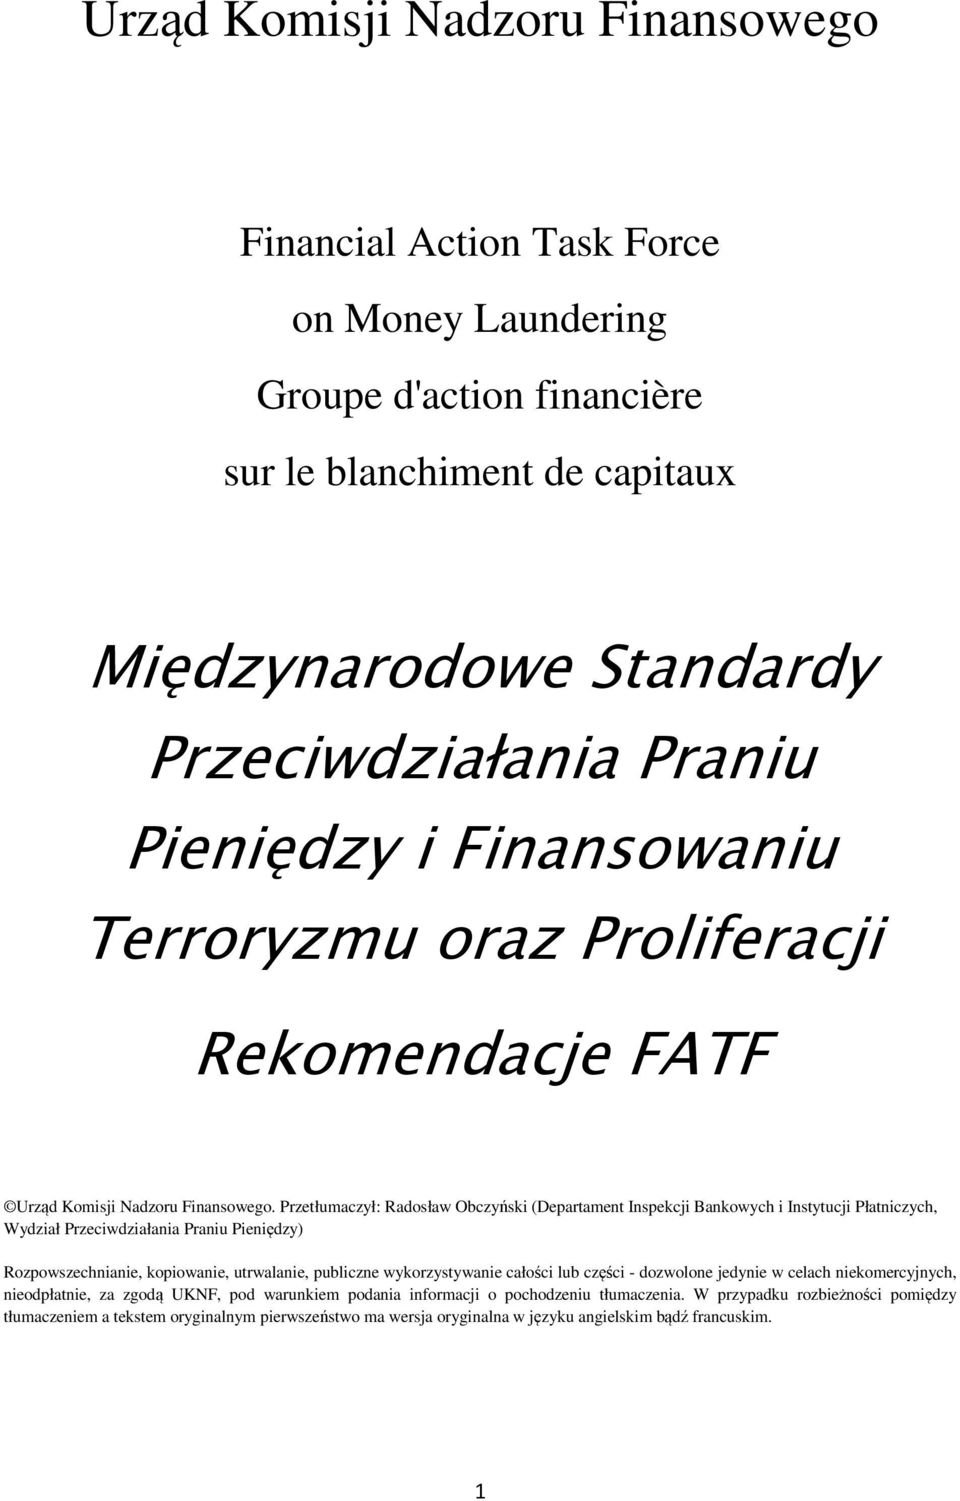 Przetłumaczył: Radosław Obczyński (Departament Inspekcji Bankowych i Instytucji Płatniczych, Wydział Przeciwdziałania Praniu Pieniędzy) Rozpowszechnianie, kopiowanie, utrwalanie, publiczne